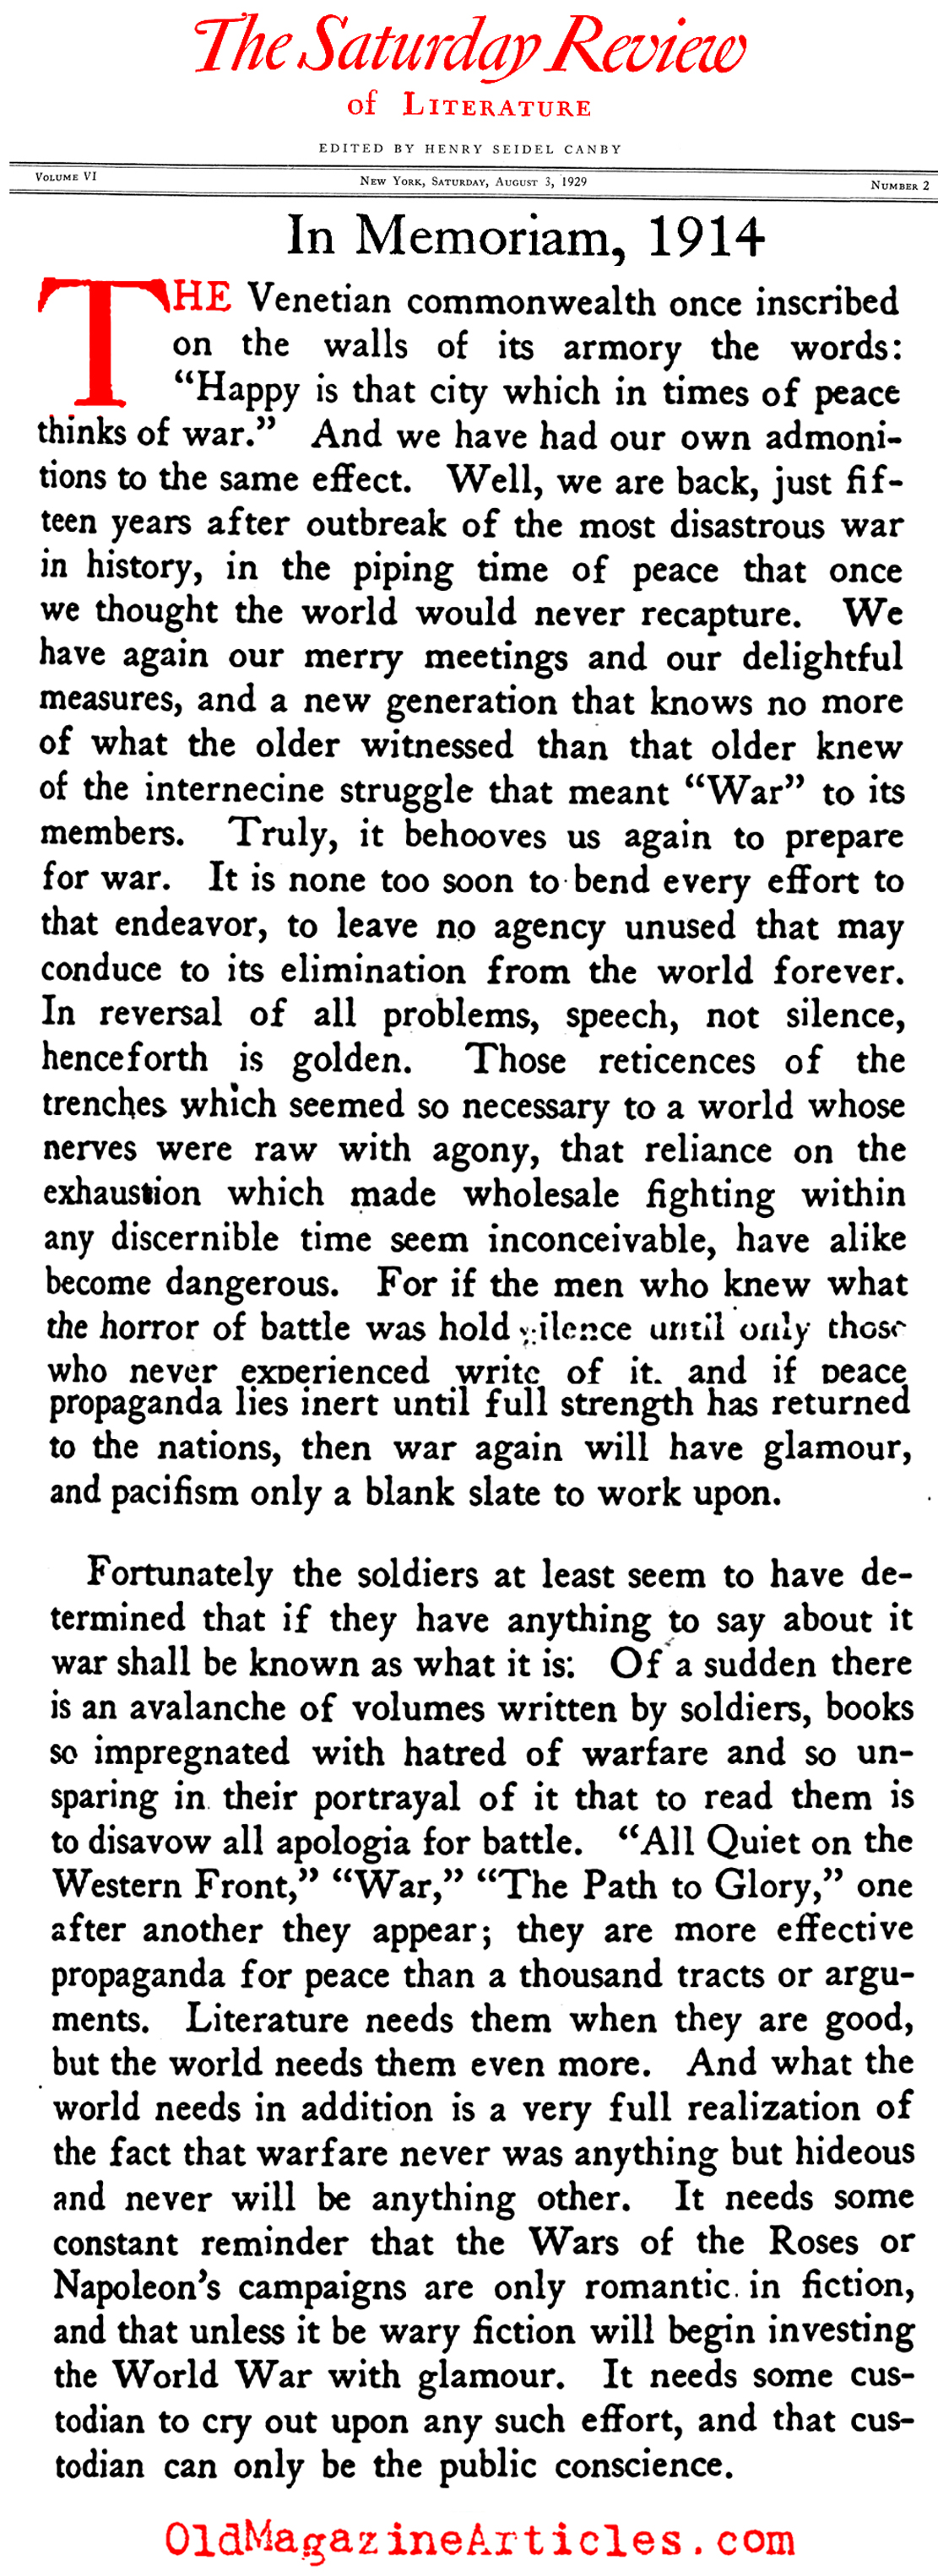 In Memorium, 1914 (Saturday Review of Literature, 1929)